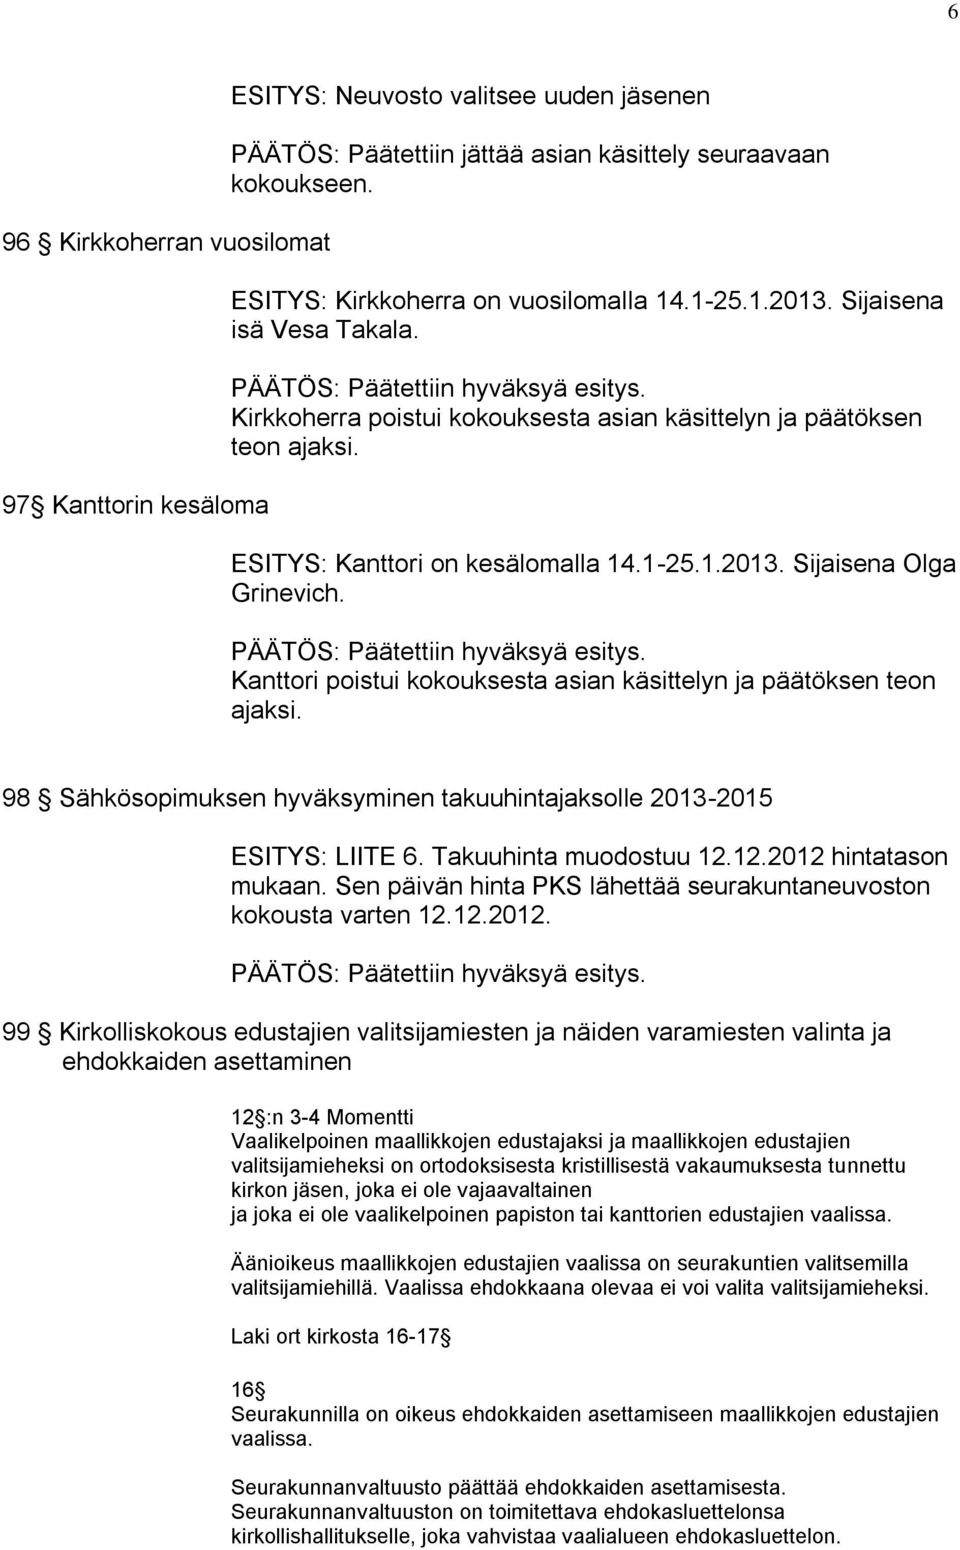 PÄÄTÖS: Päätettiin hyväksyä esitys. Kanttori poistui kokouksesta asian käsittelyn ja päätöksen teon ajaksi. 98 Sähkösopimuksen hyväksyminen takuuhintajaksolle 2013-2015 ESITYS: LIITE 6.